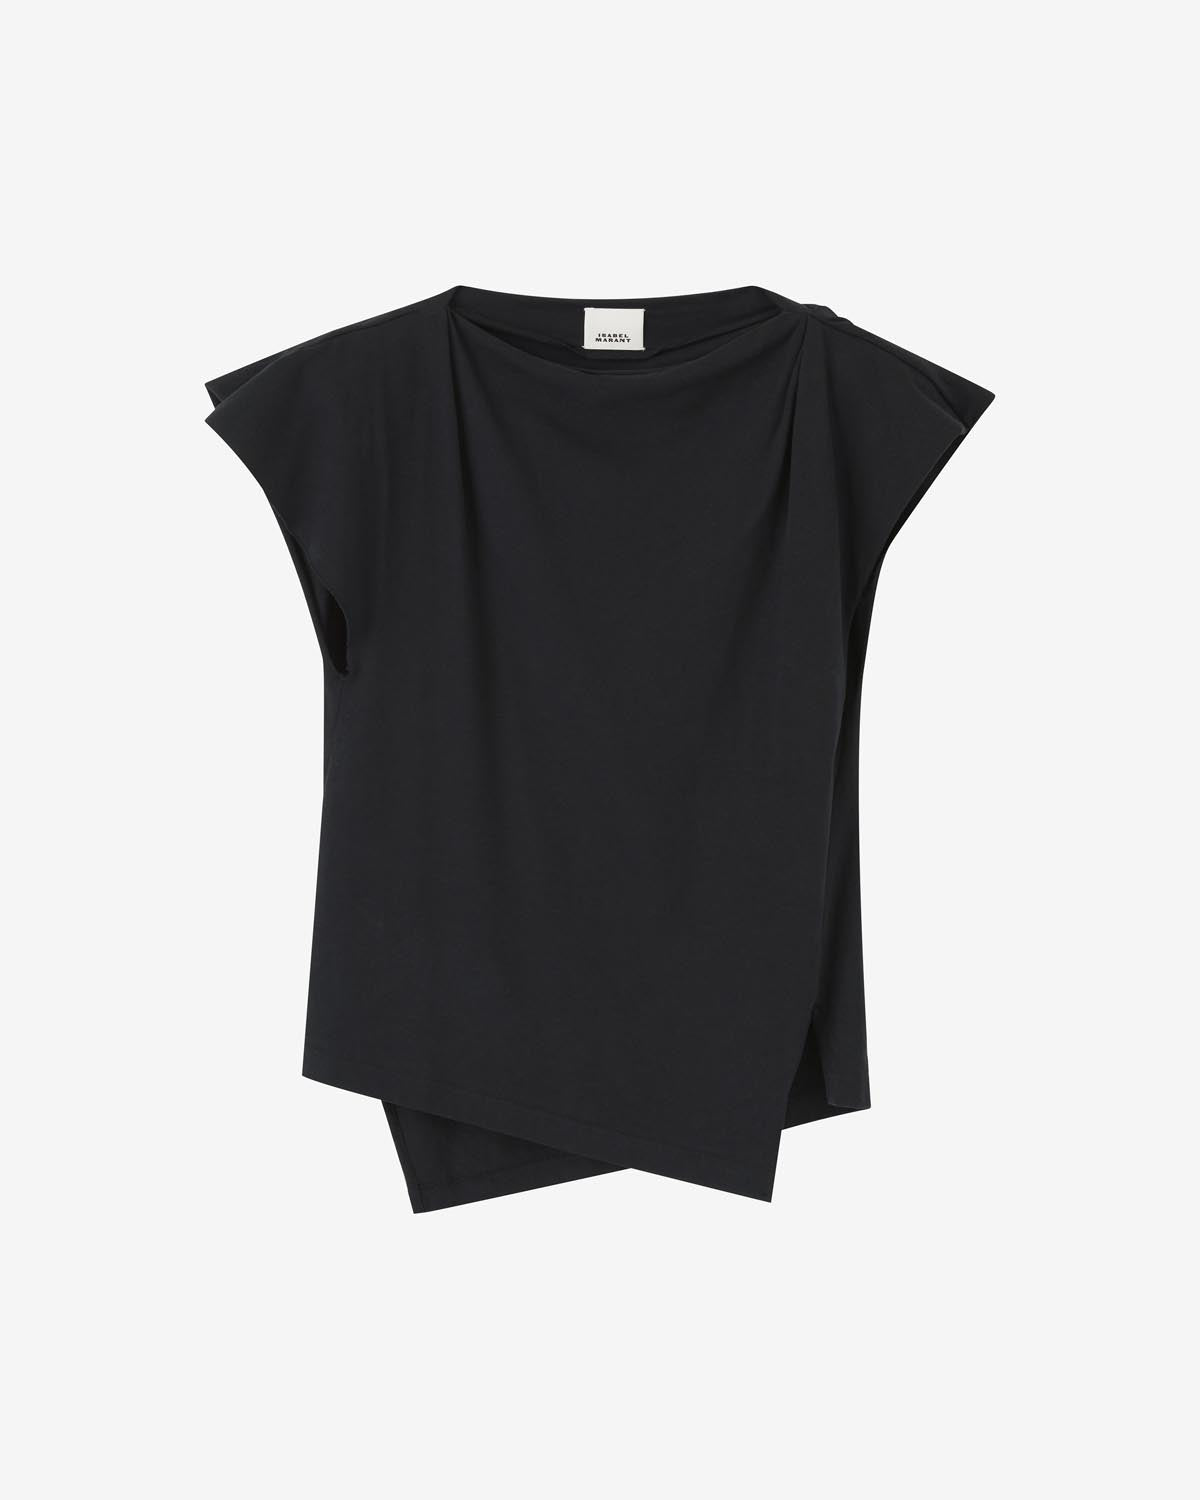 Sebani tシャツ Woman 黒 1